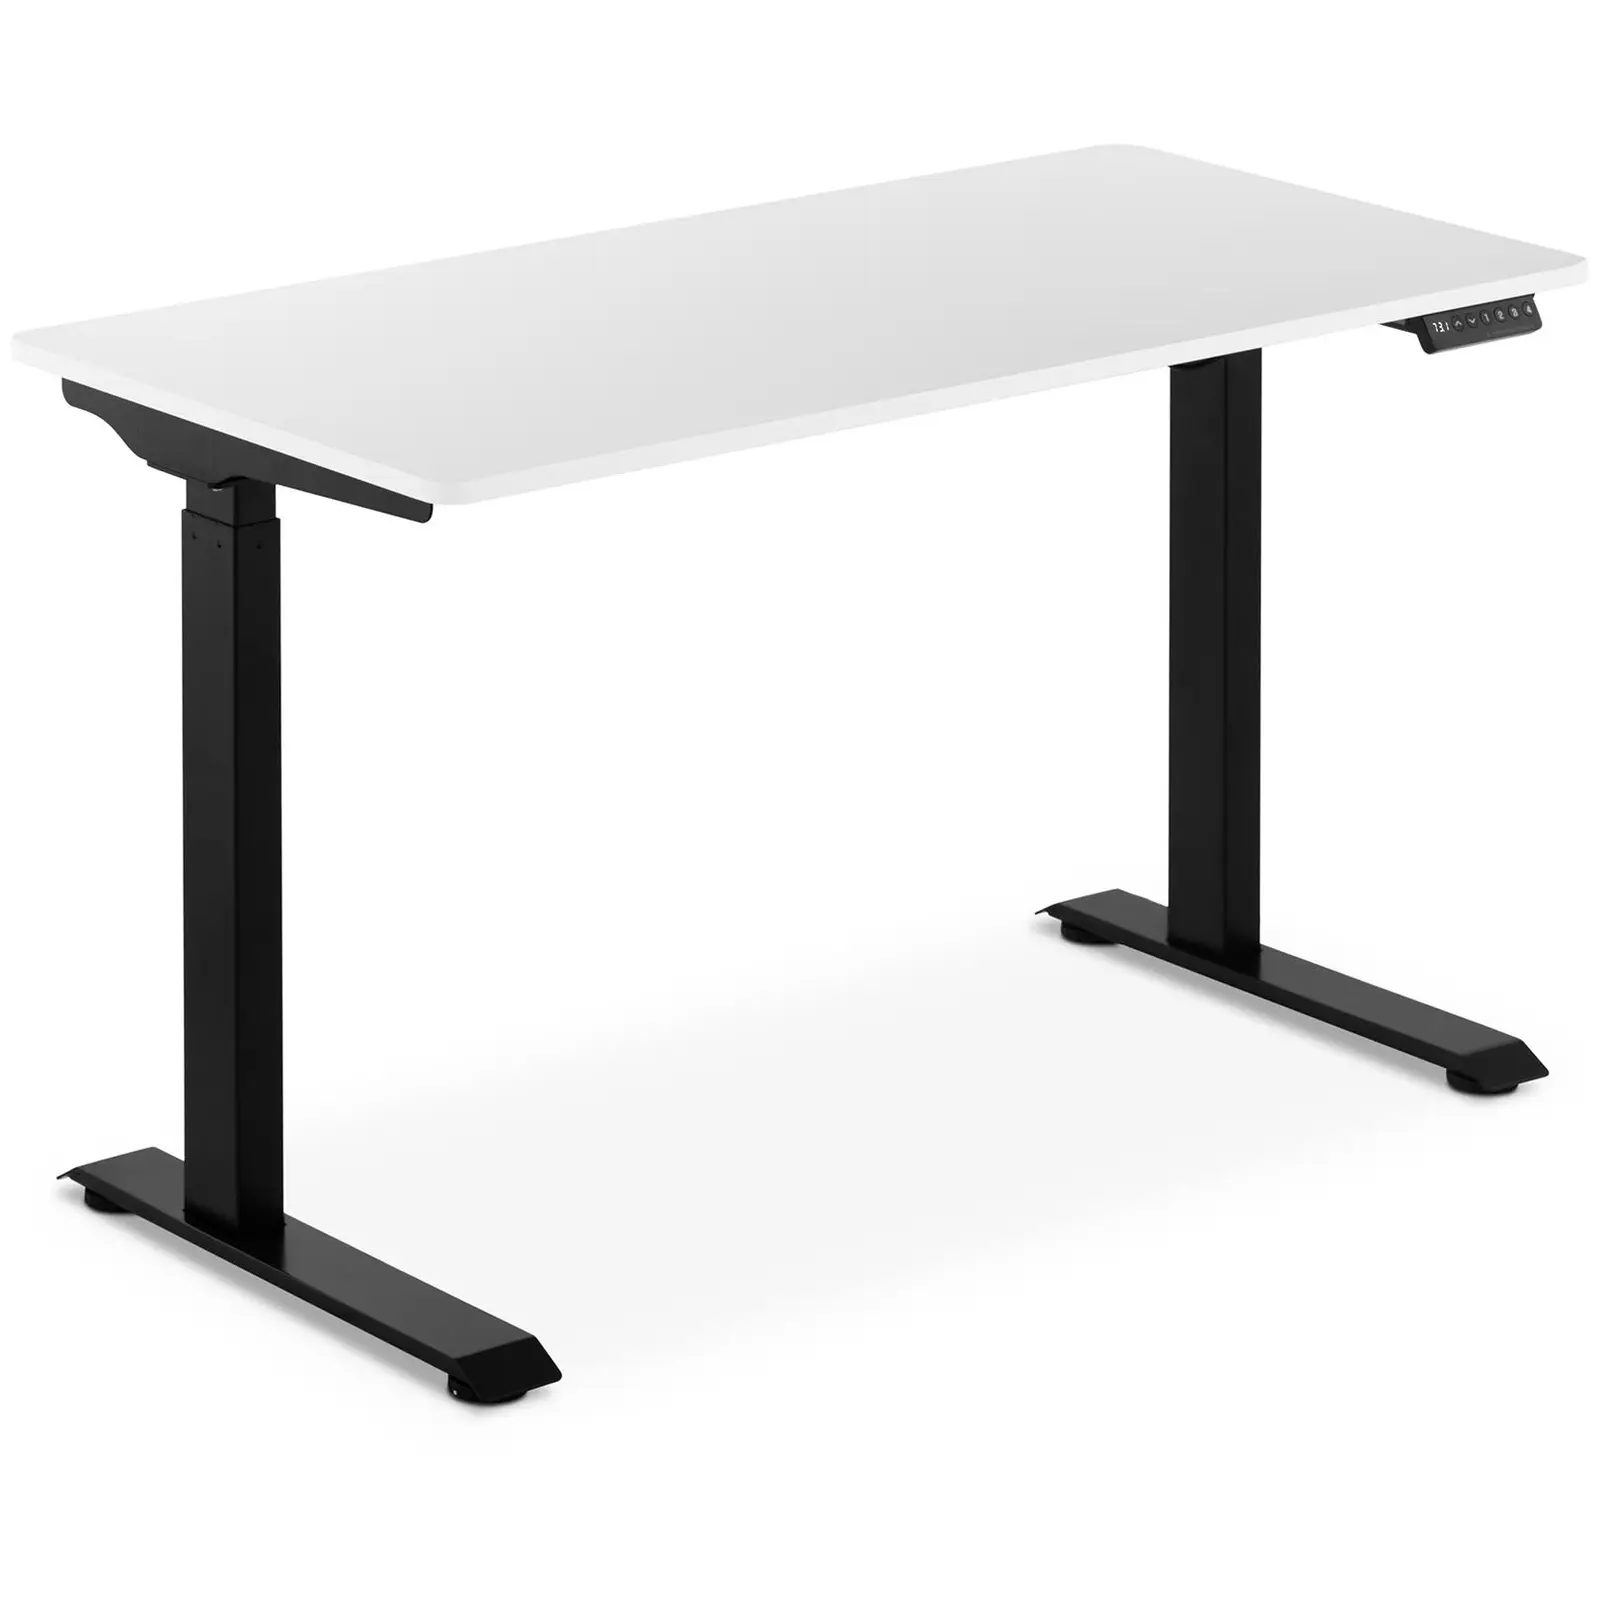 Schreibtisch höhenverstellbar - 90 W - 730 - 1.233 mm - weiß/schwarz